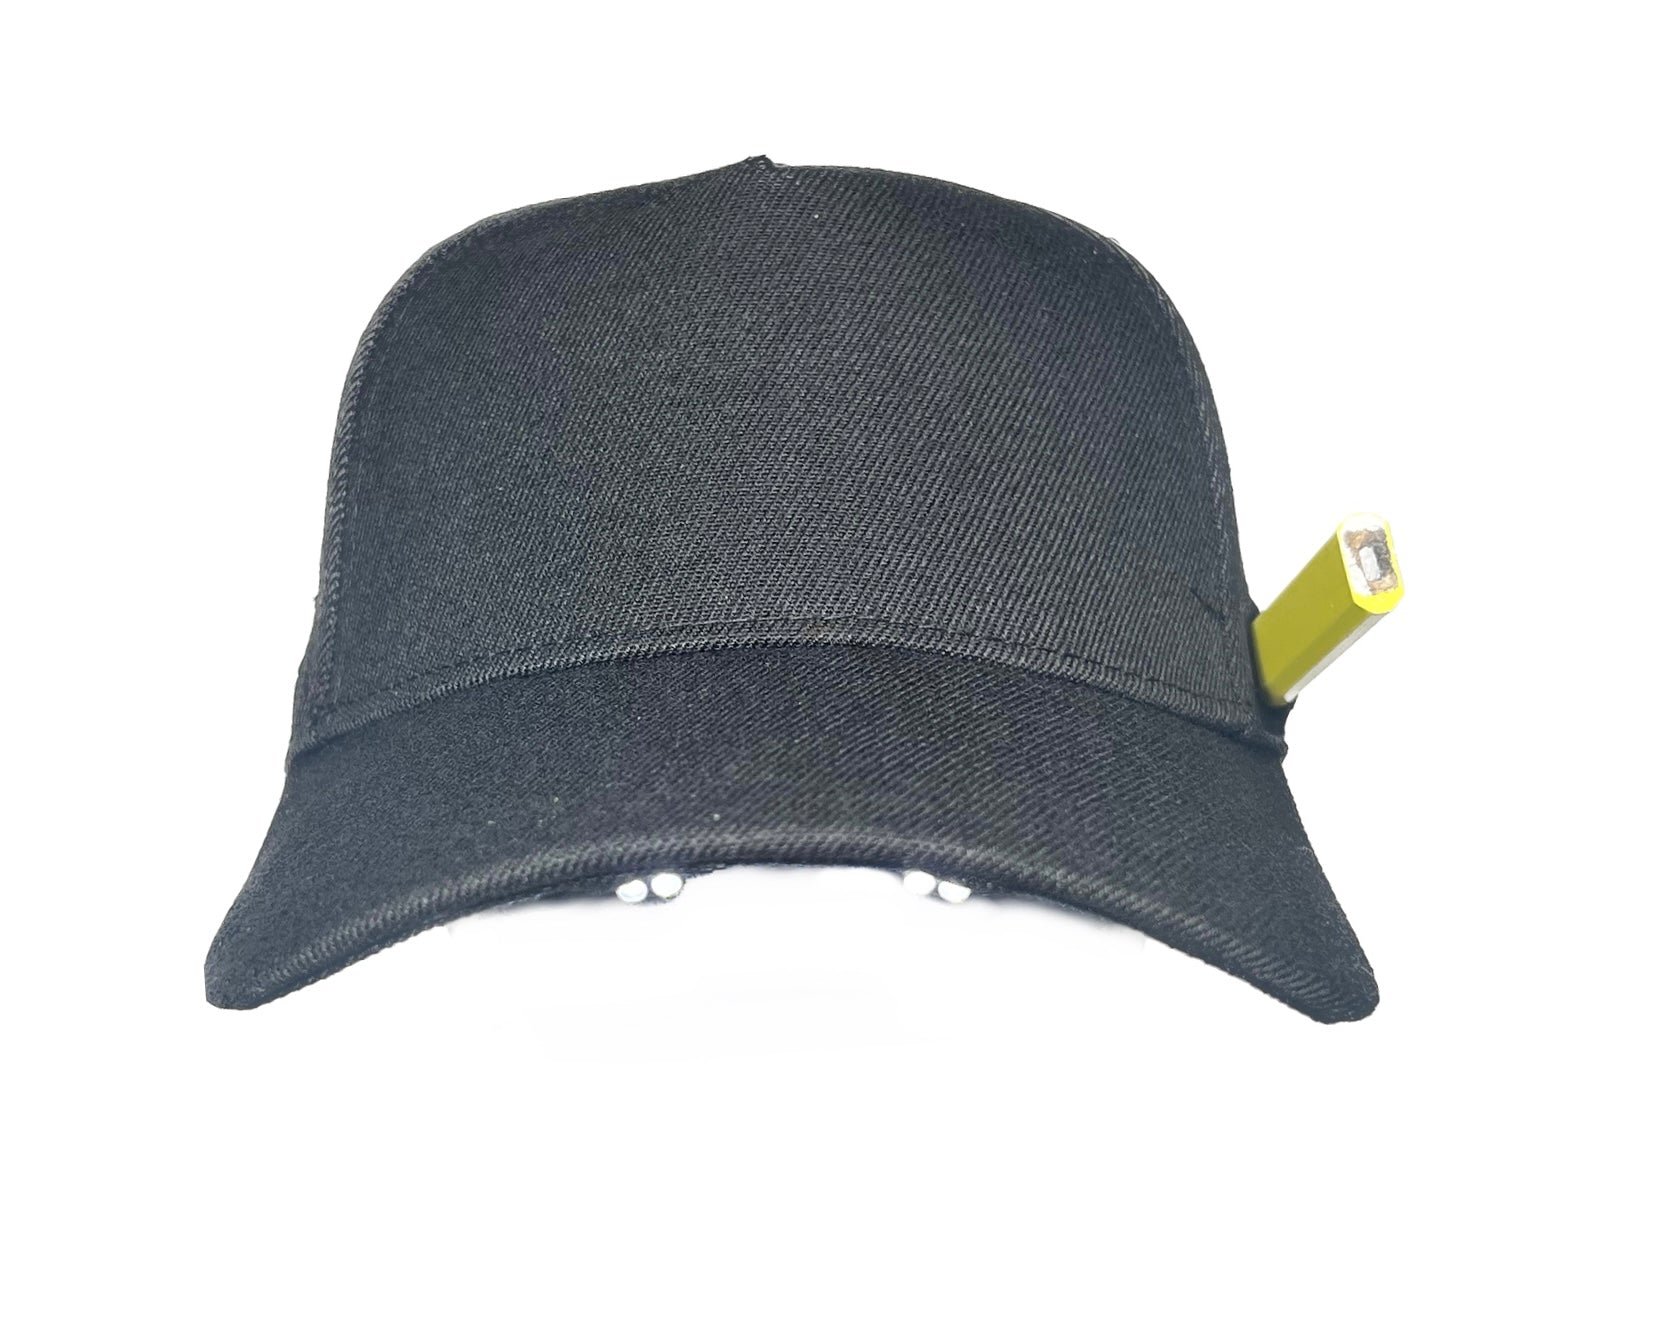 Non-Logo Black Mesh Lighted Hats Bulk Order of 8